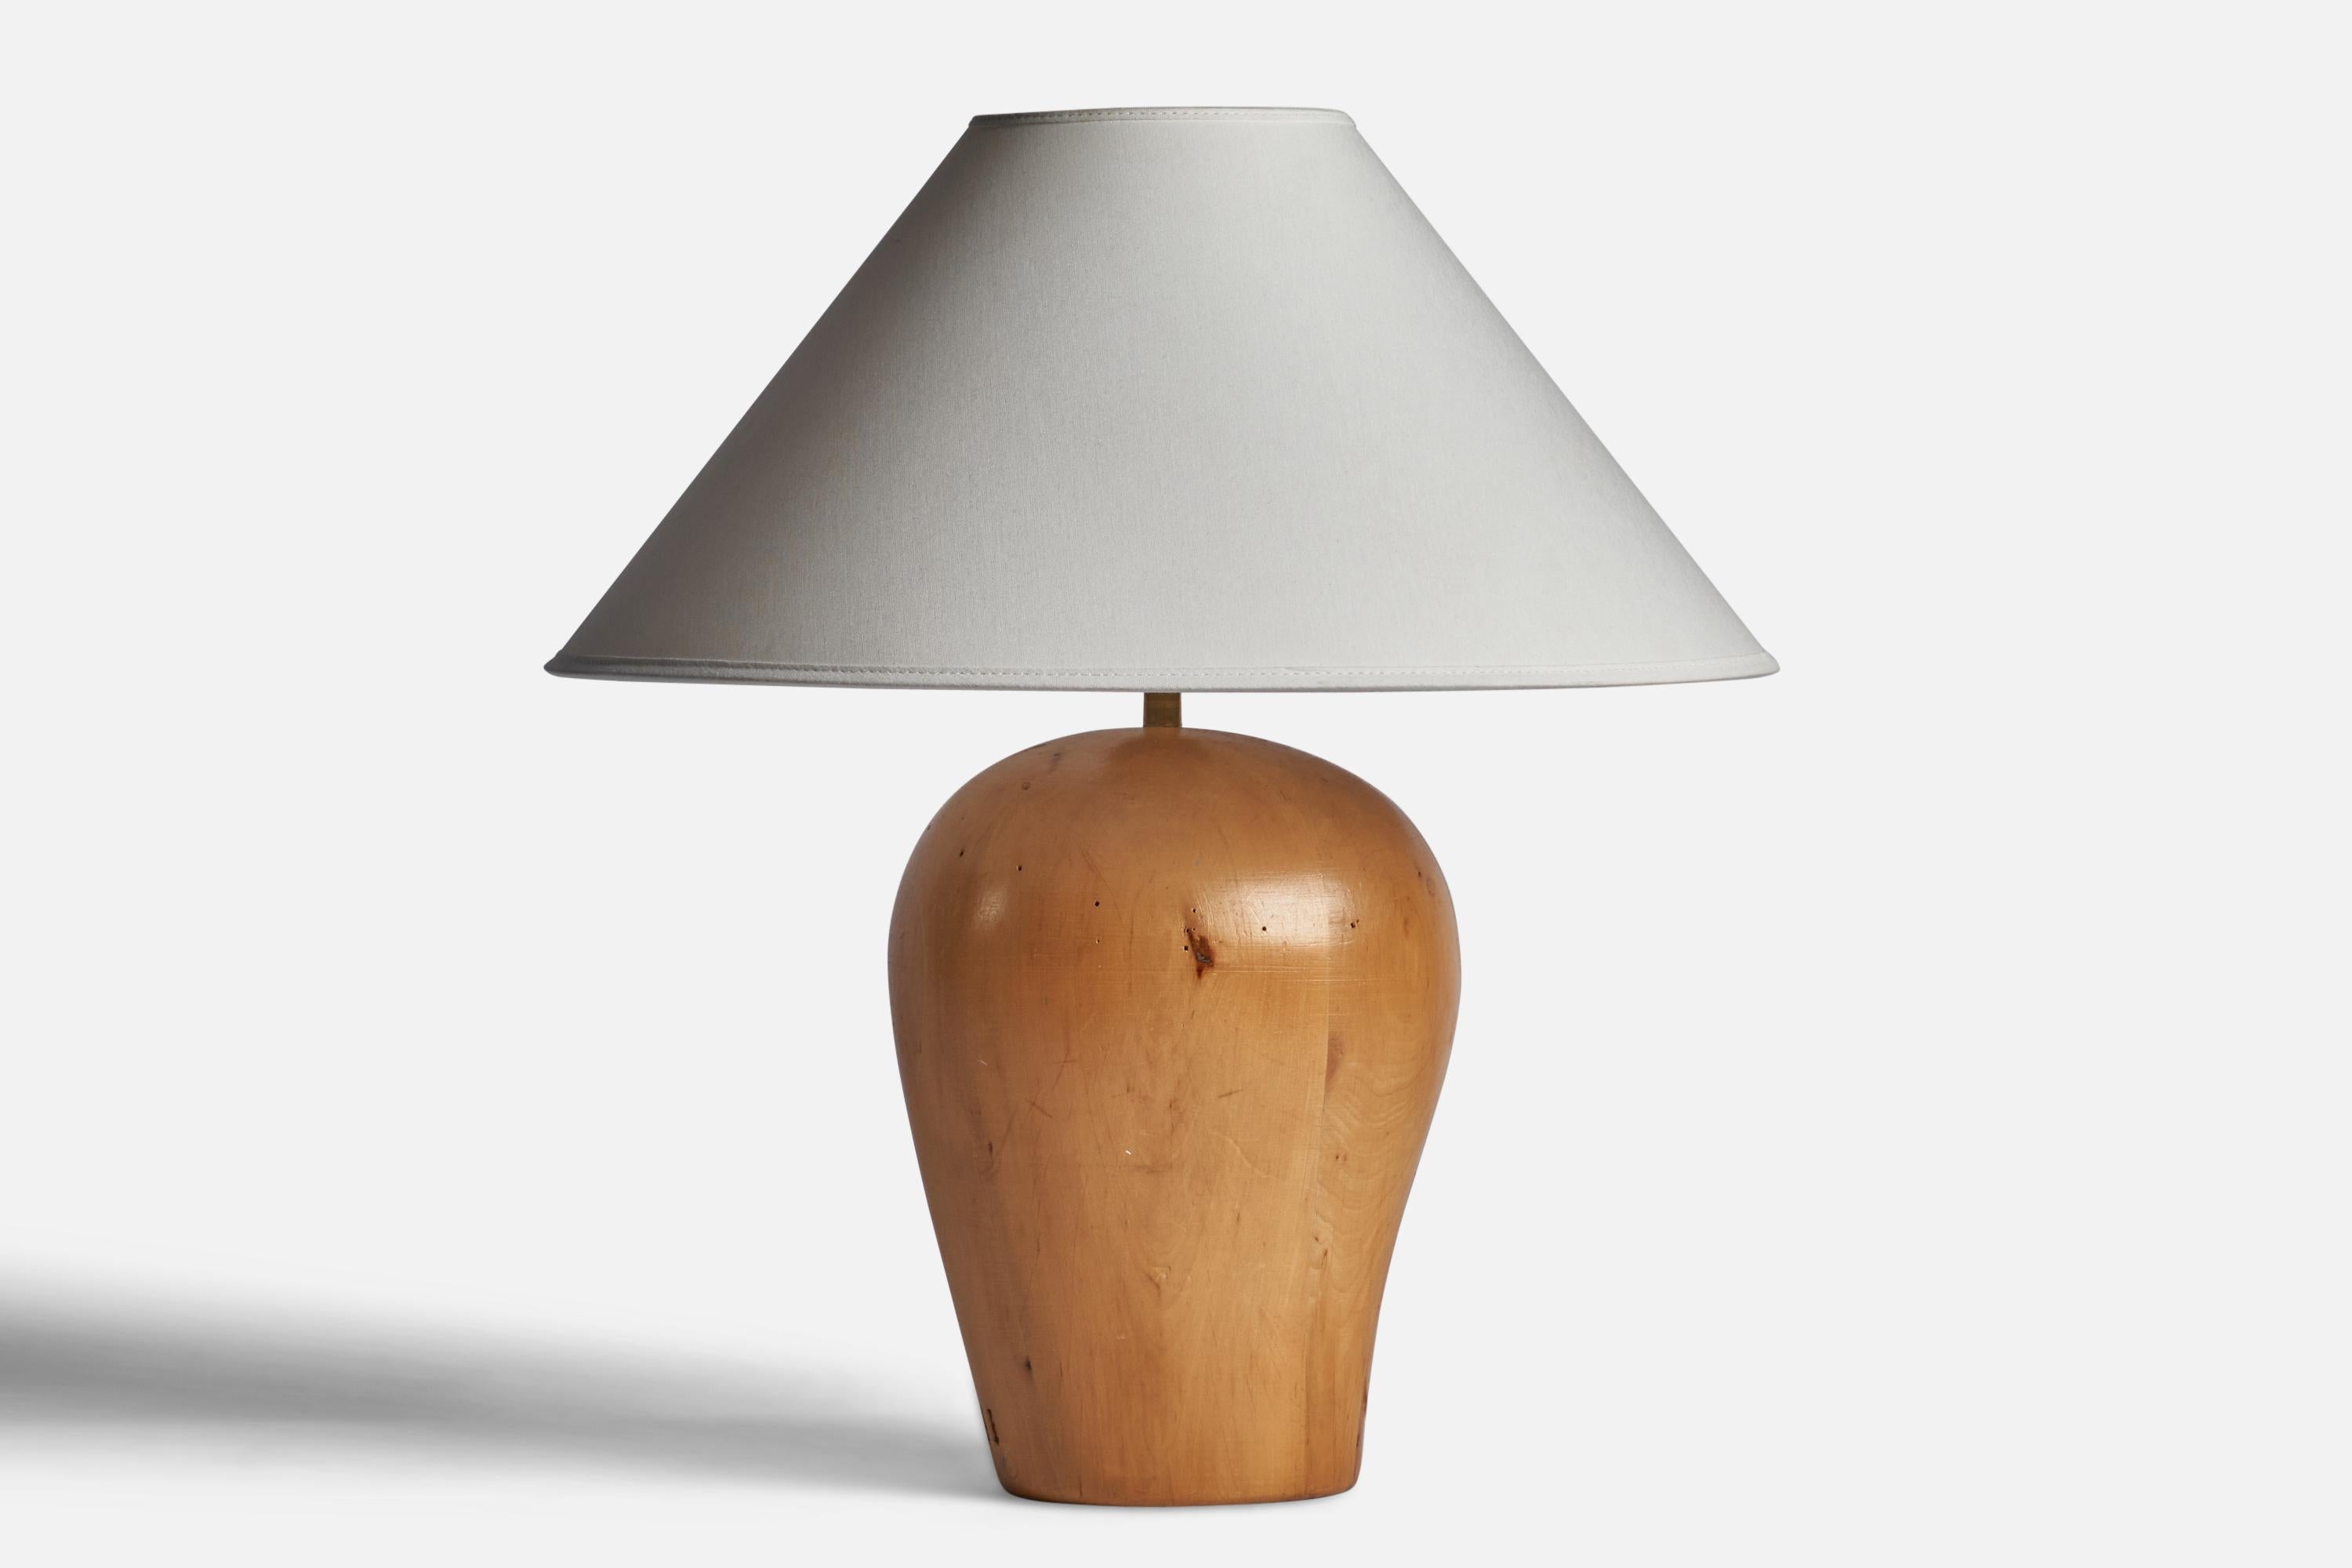 Lampe de table en bois conçue et produite en Suède, années 1940.

Dimensions de la lampe (pouces) : 13